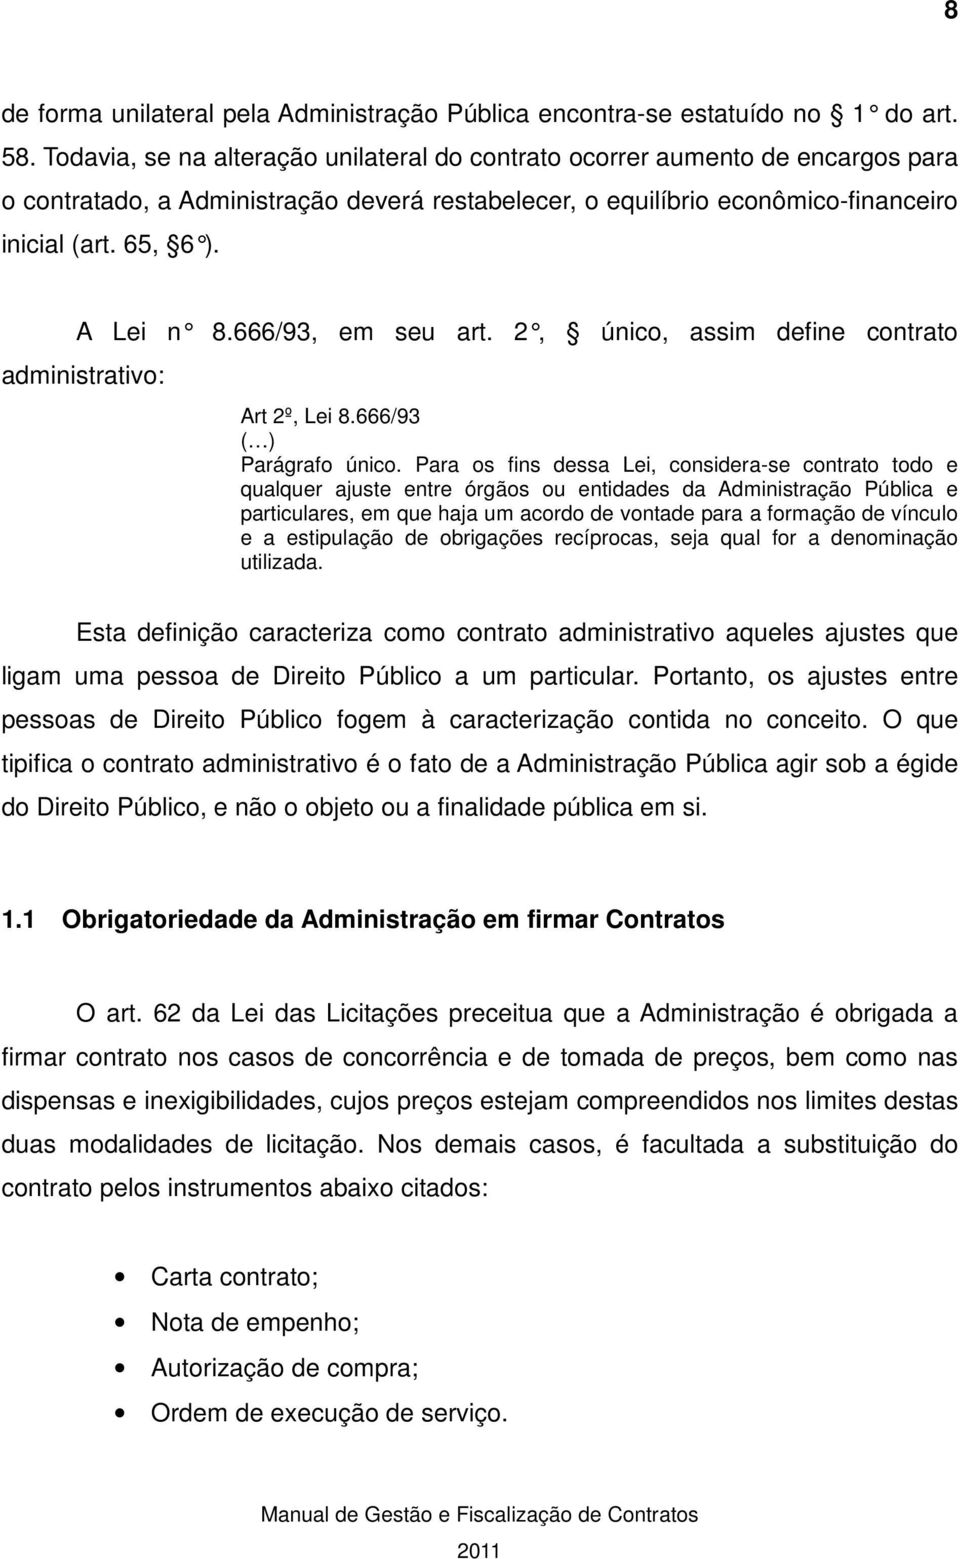 666/93, em seu art. 2, único, assim administrativo: define contrato Art 2º, Lei 8.666/93 ( ) Parágrafo único.